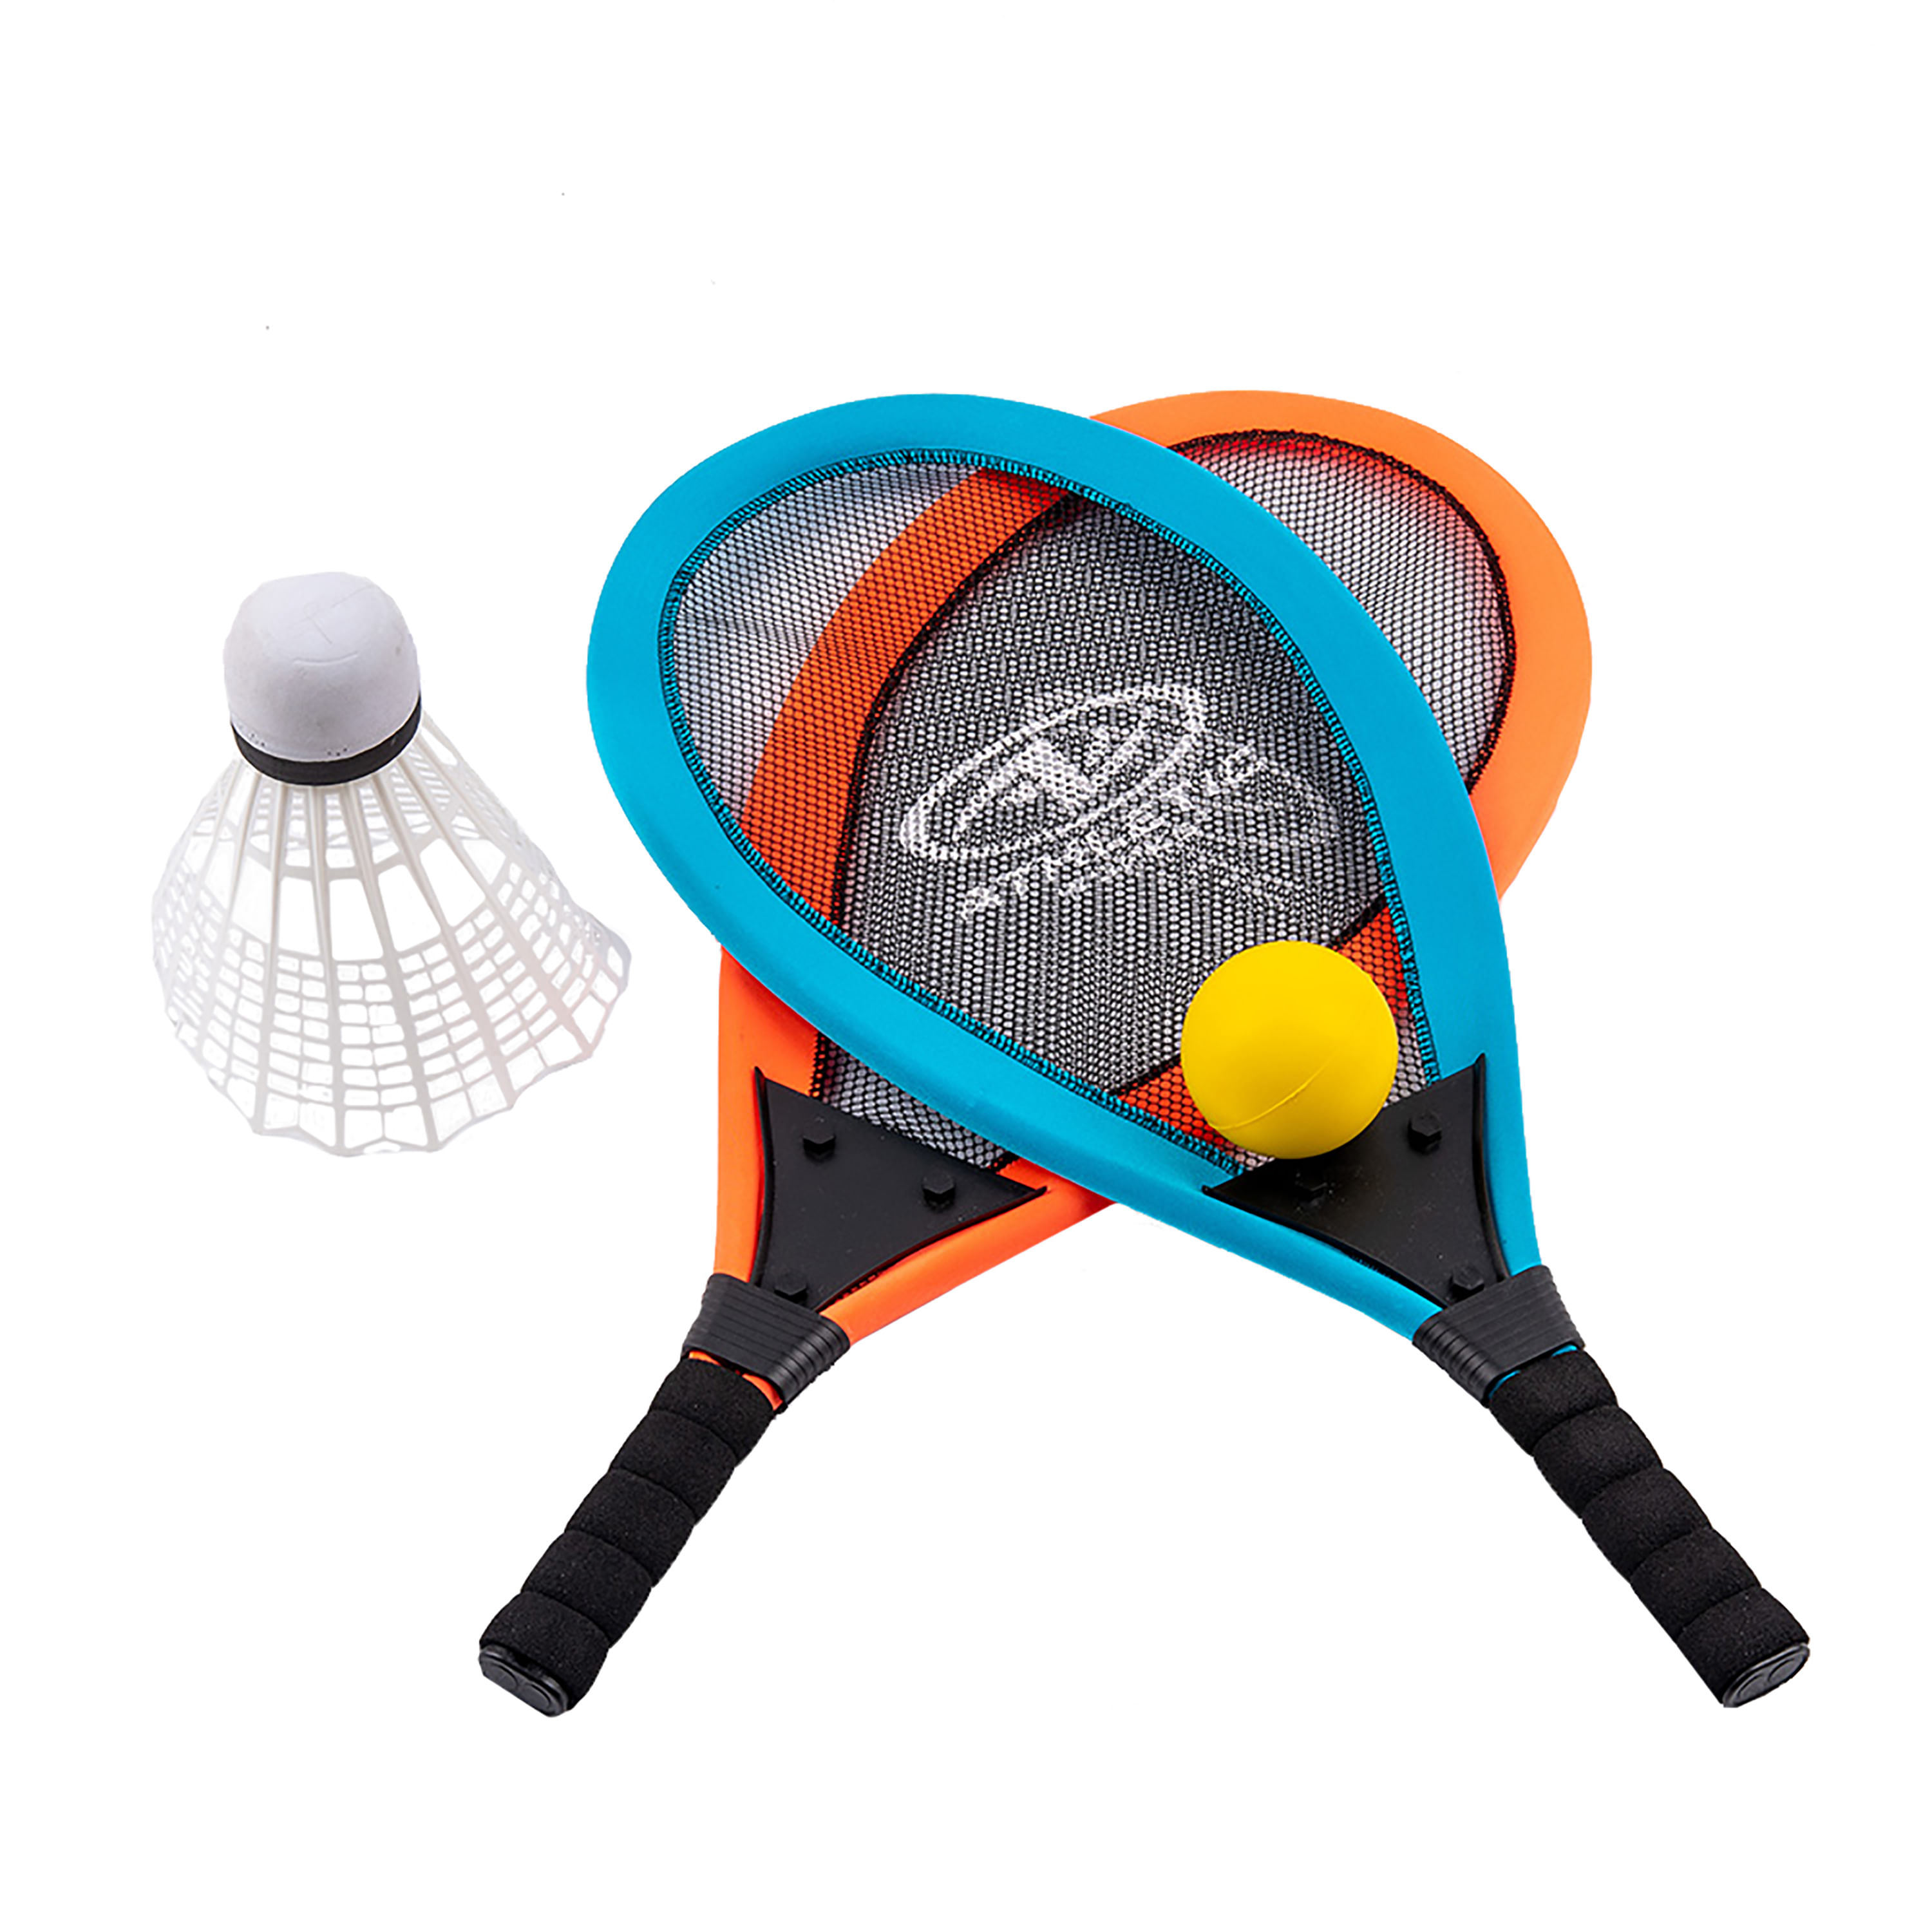 Raquetas de Badminton desde 5,32€